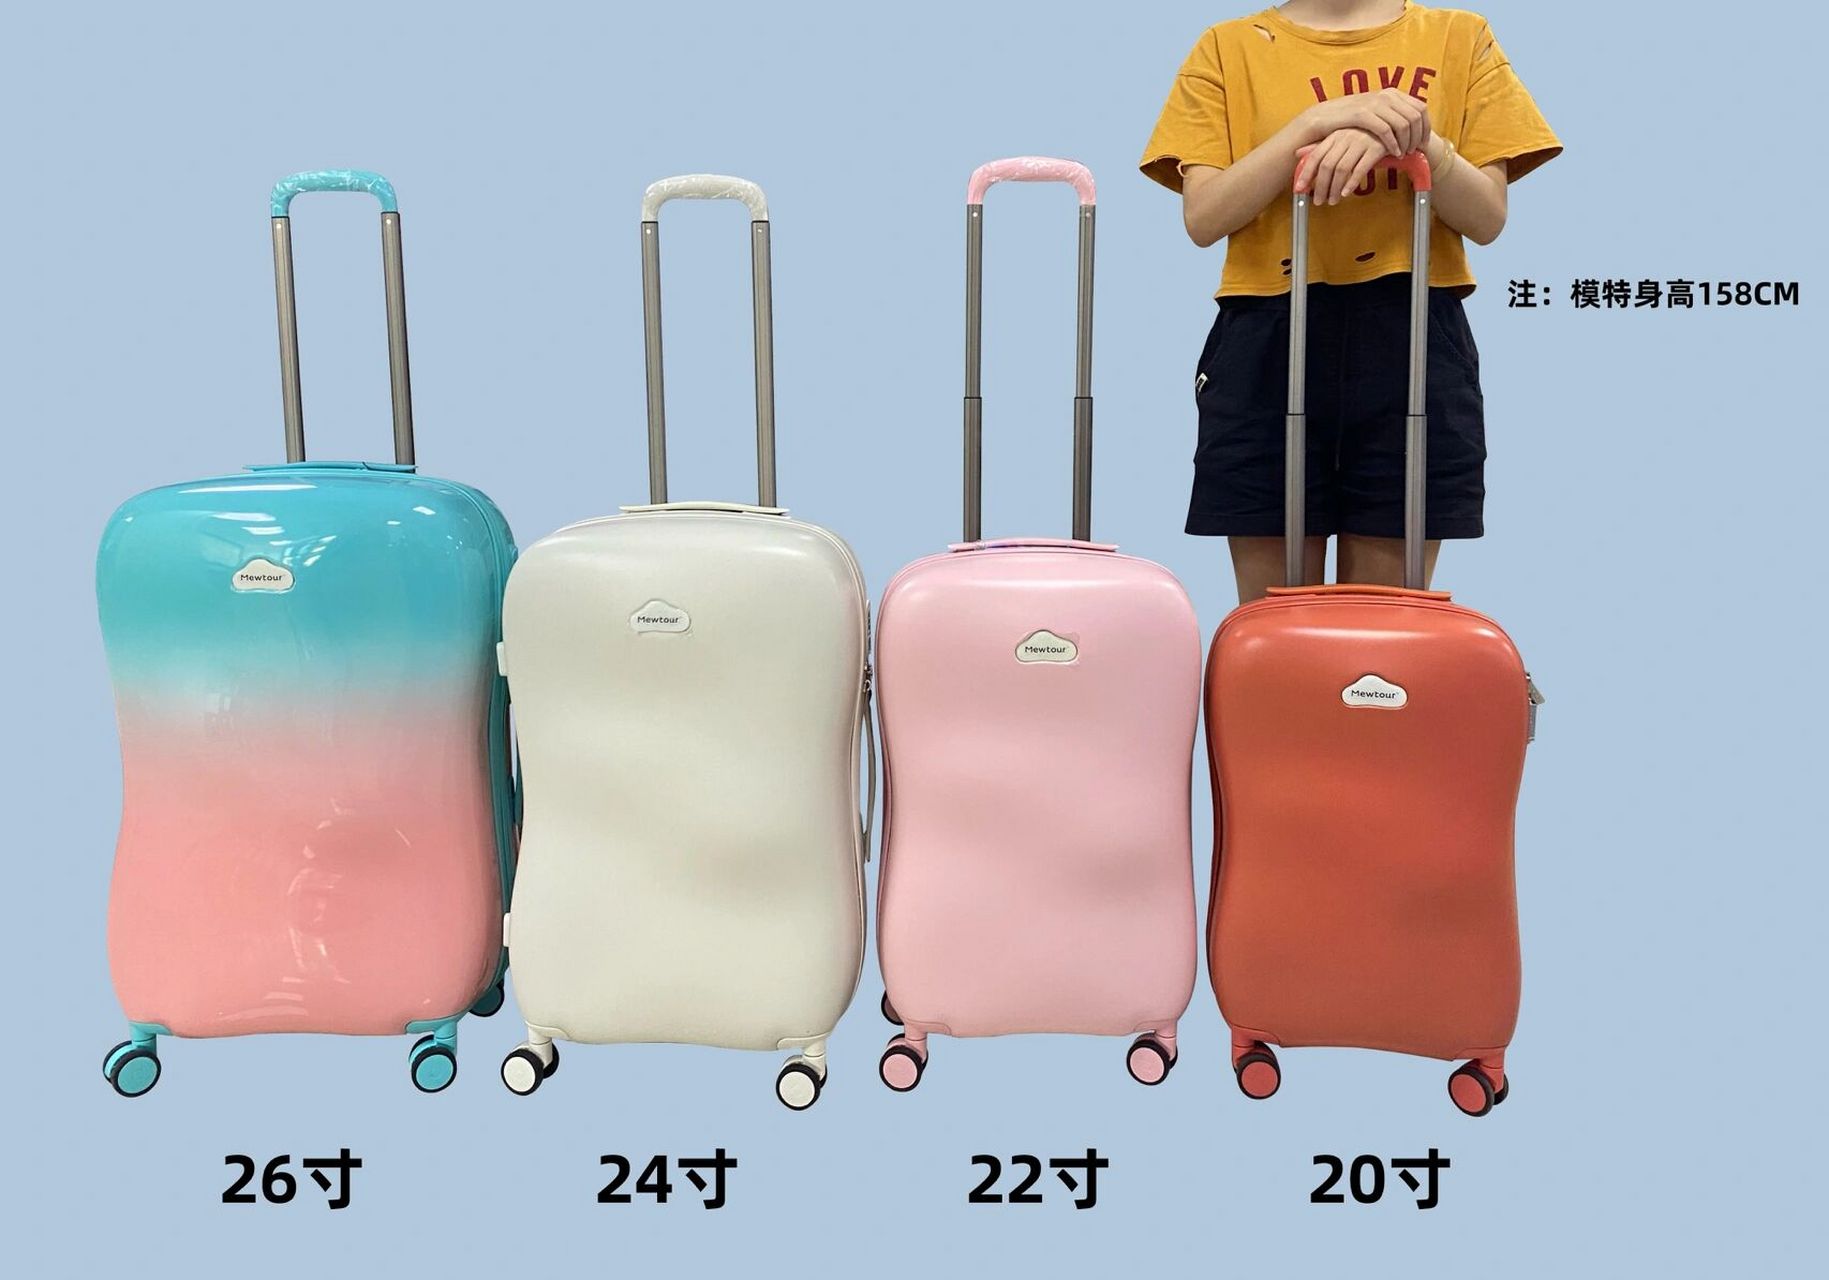 26寸和28寸行李箱对比图片